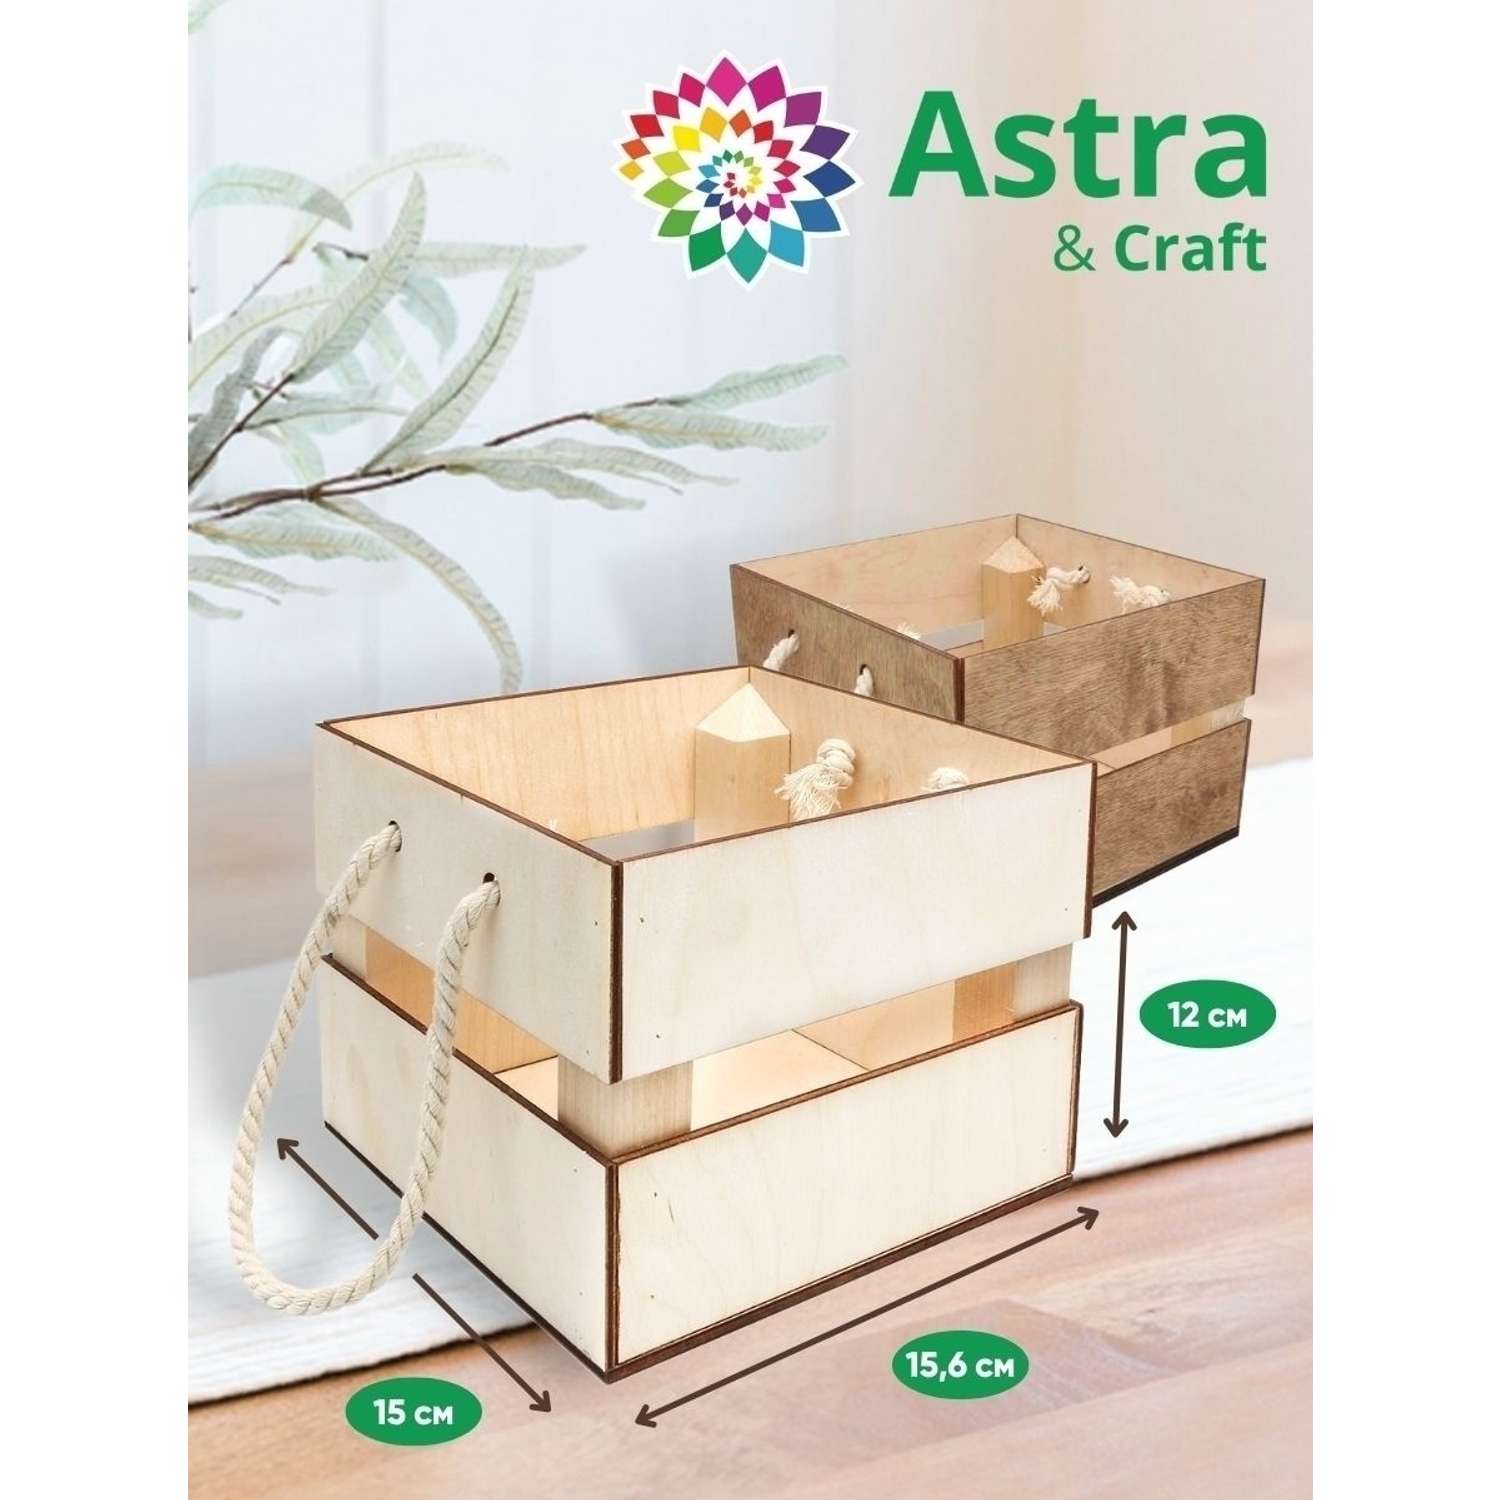 Кашпо Astra Craft с ручками для творчества рукоделия флористики 15.6х15х12 см белый - фото 2